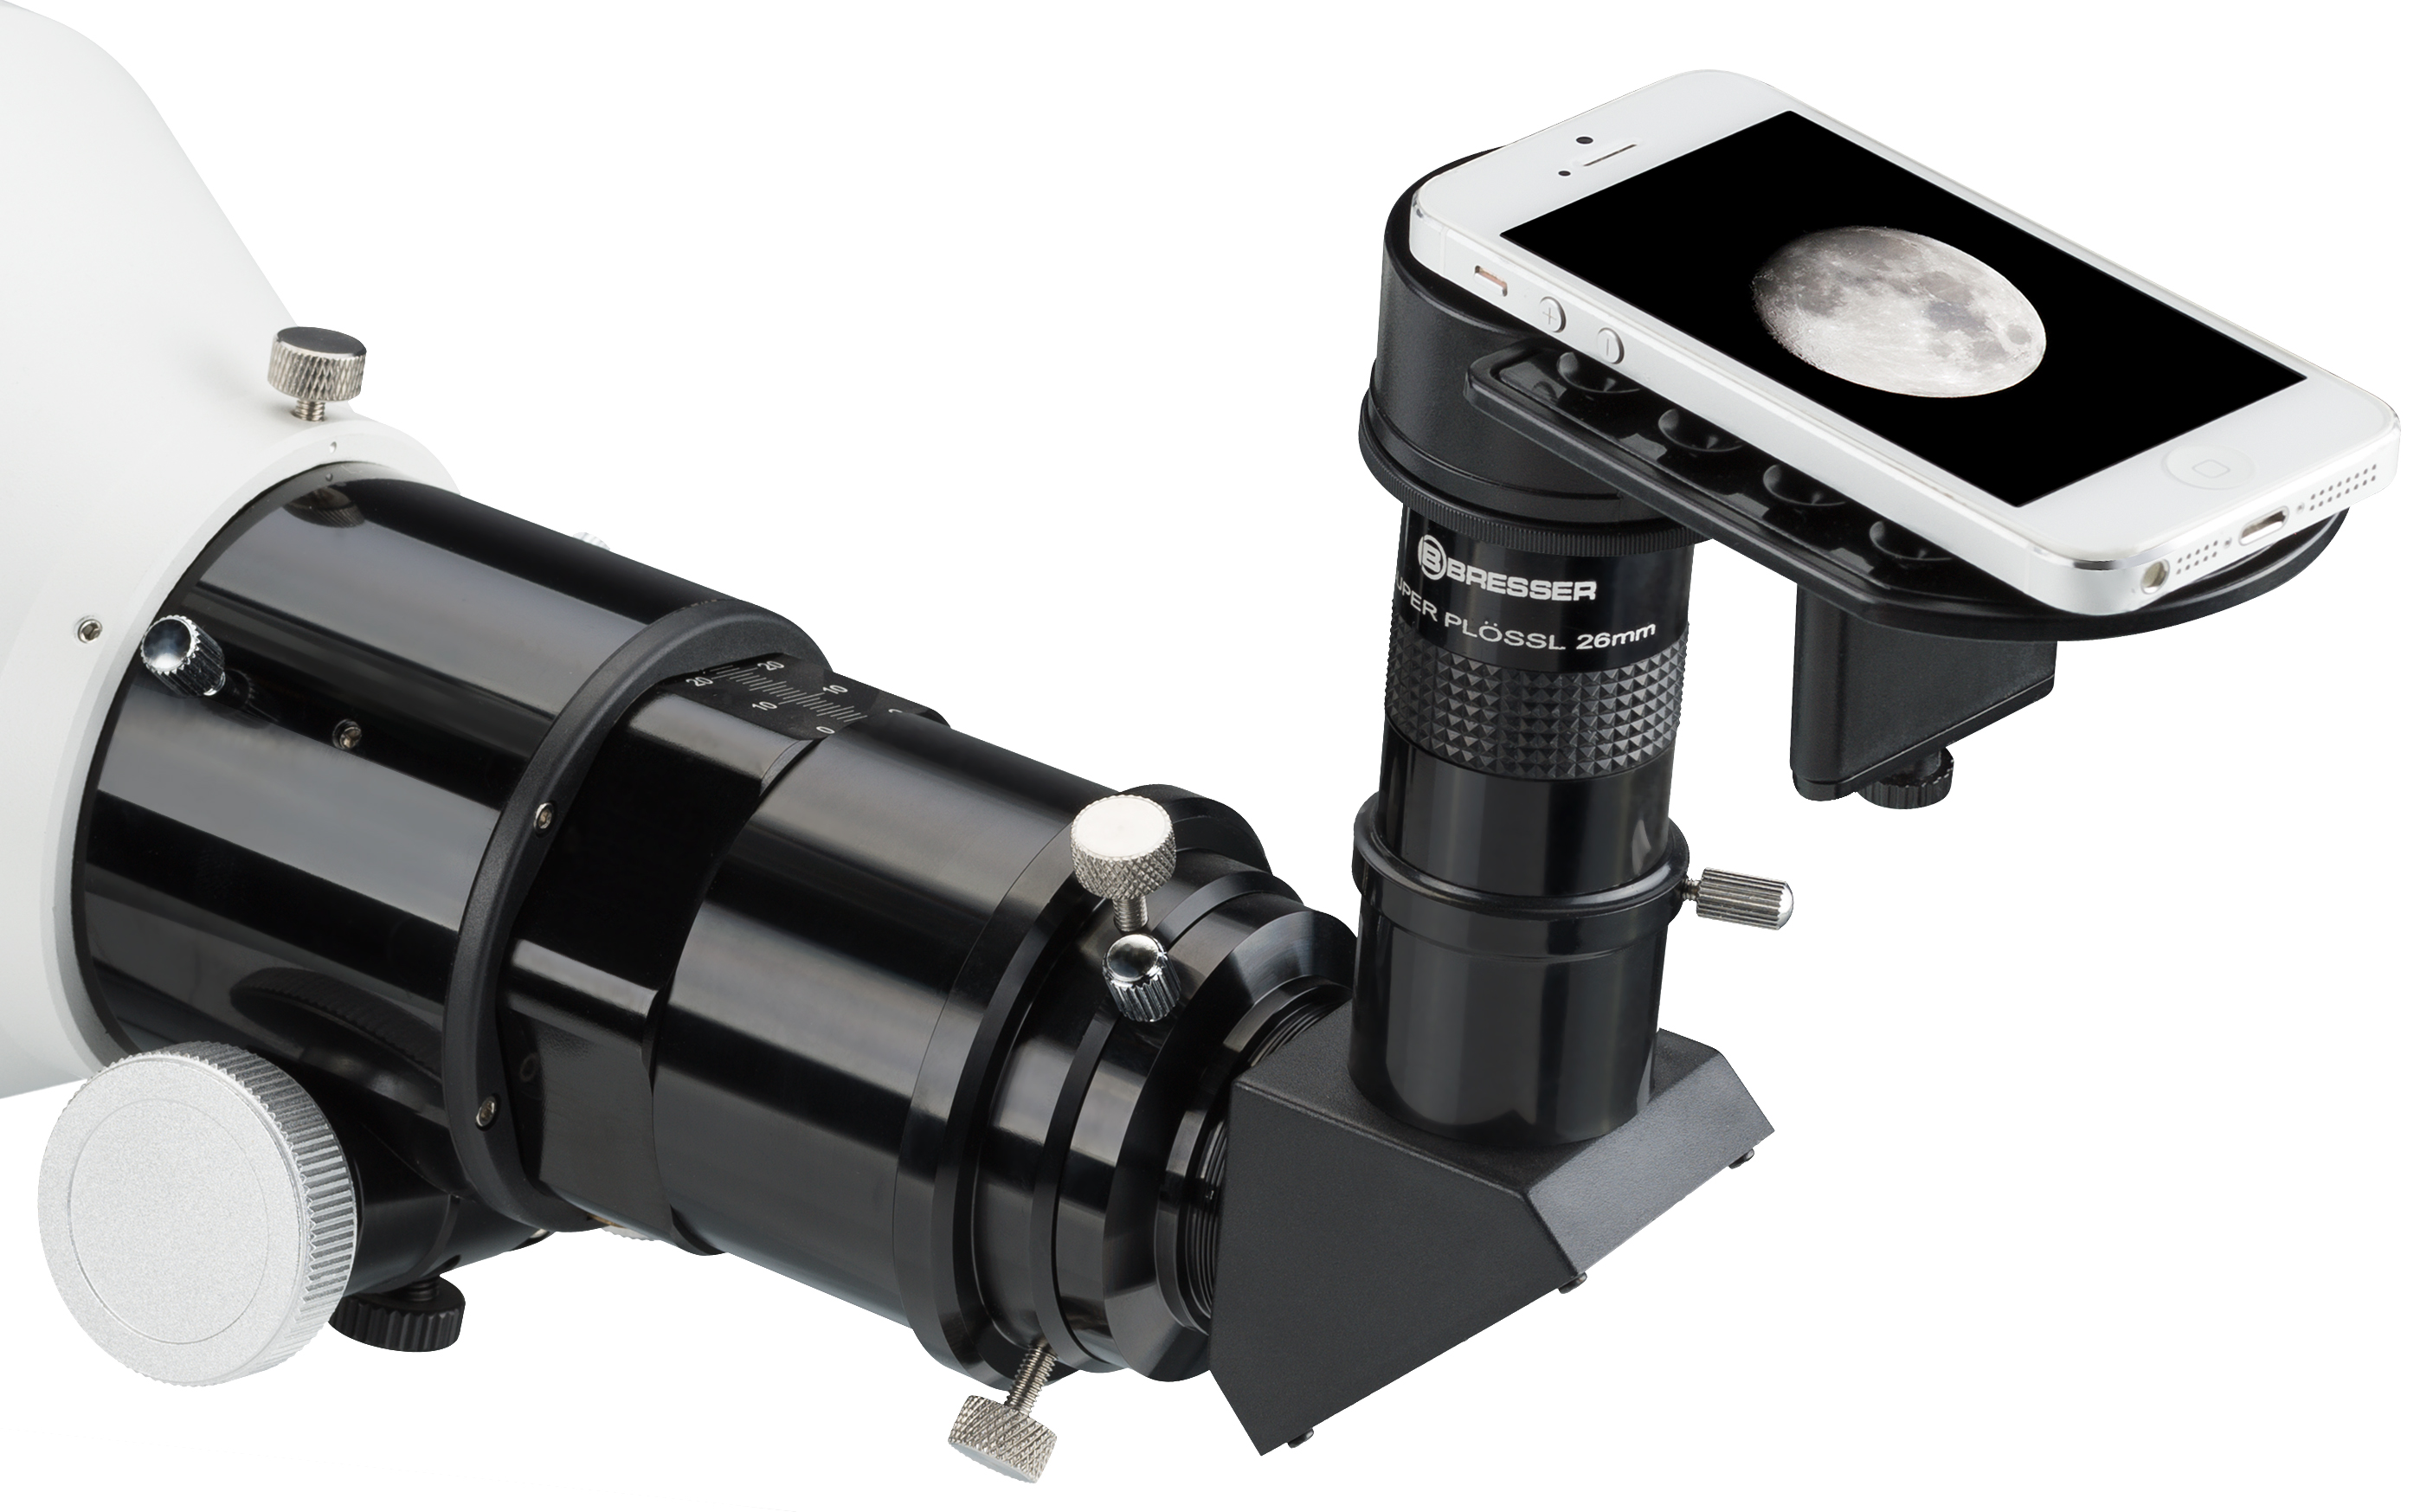 Adattatore per smartphone BRESSER Deluxe per telescopi e microscopi